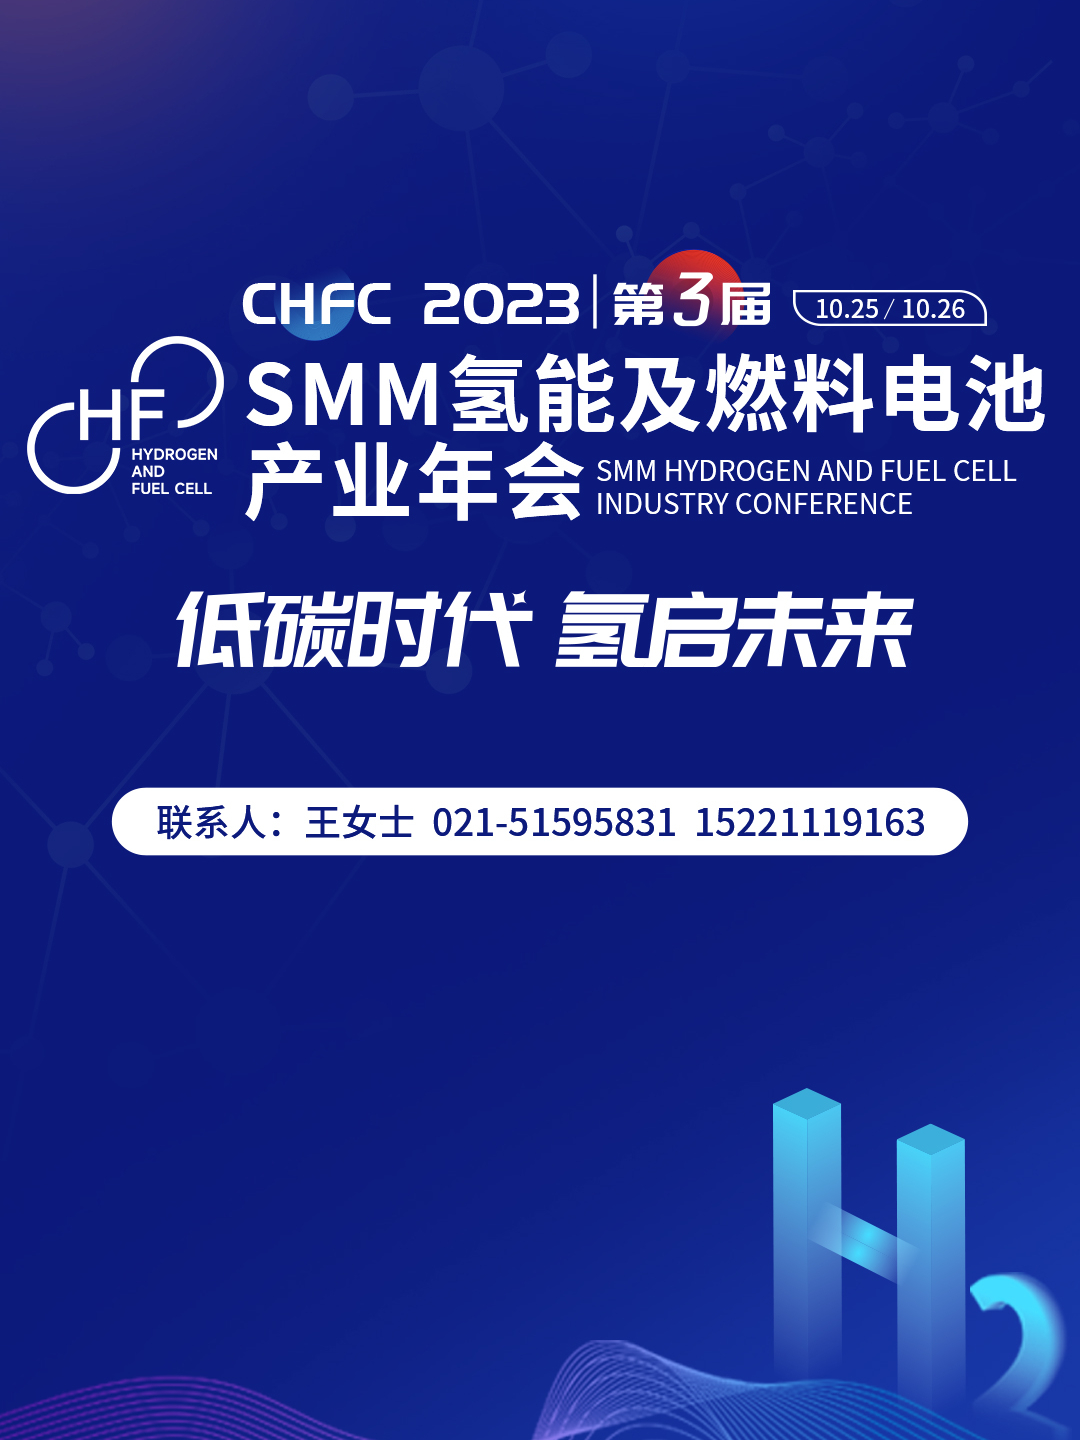 CHFC2023第三届SMM氢能及燃料电池产业年会